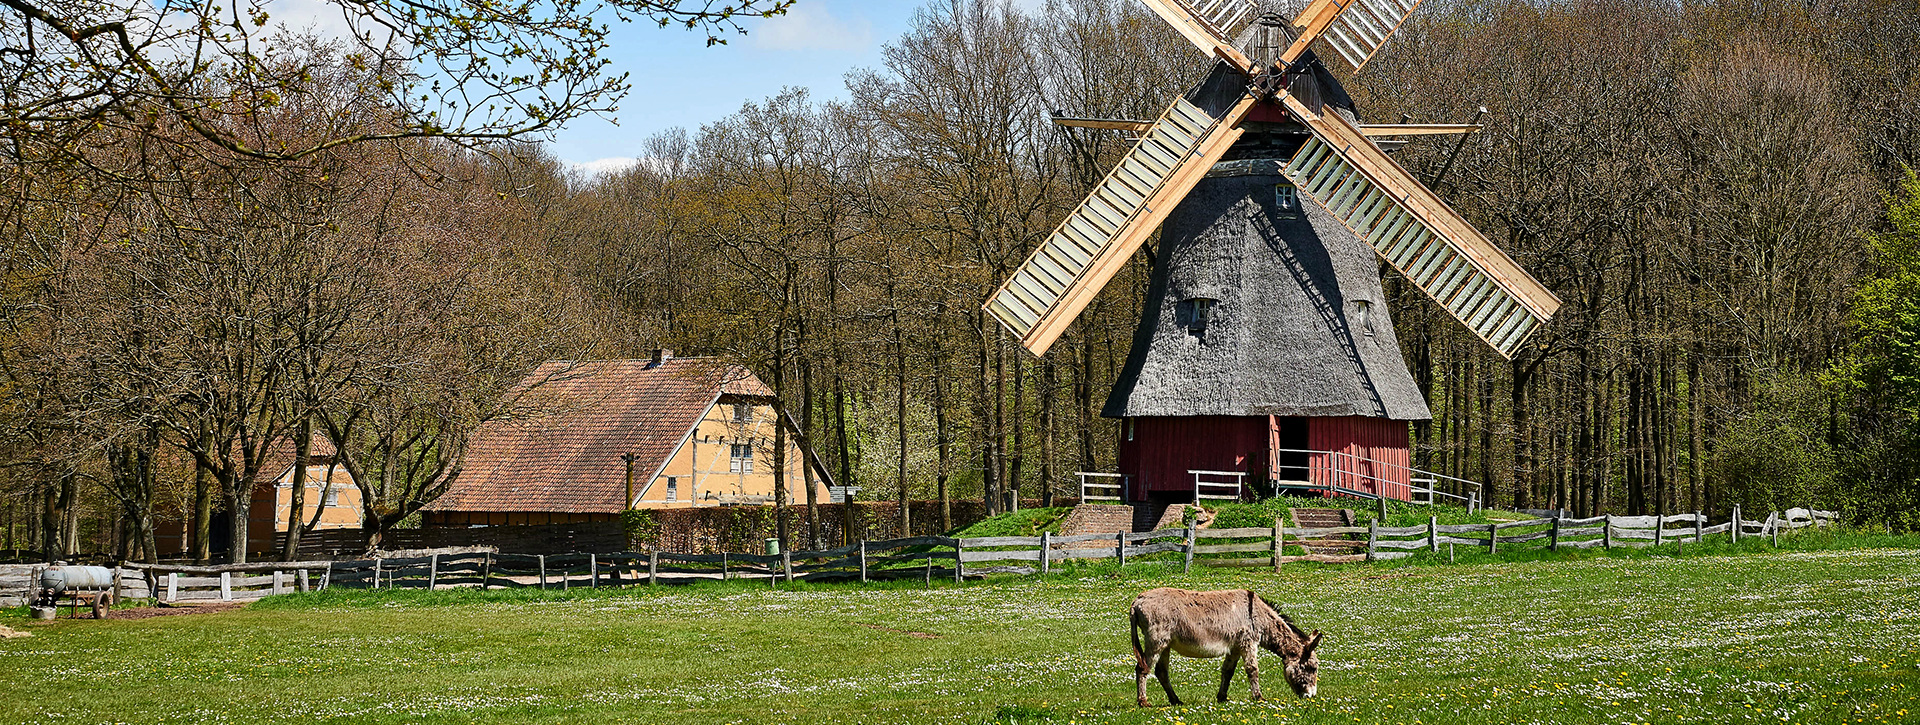 Wiese mit Windmühle und Fachwerkhaus, im Vordergrund ein Esel